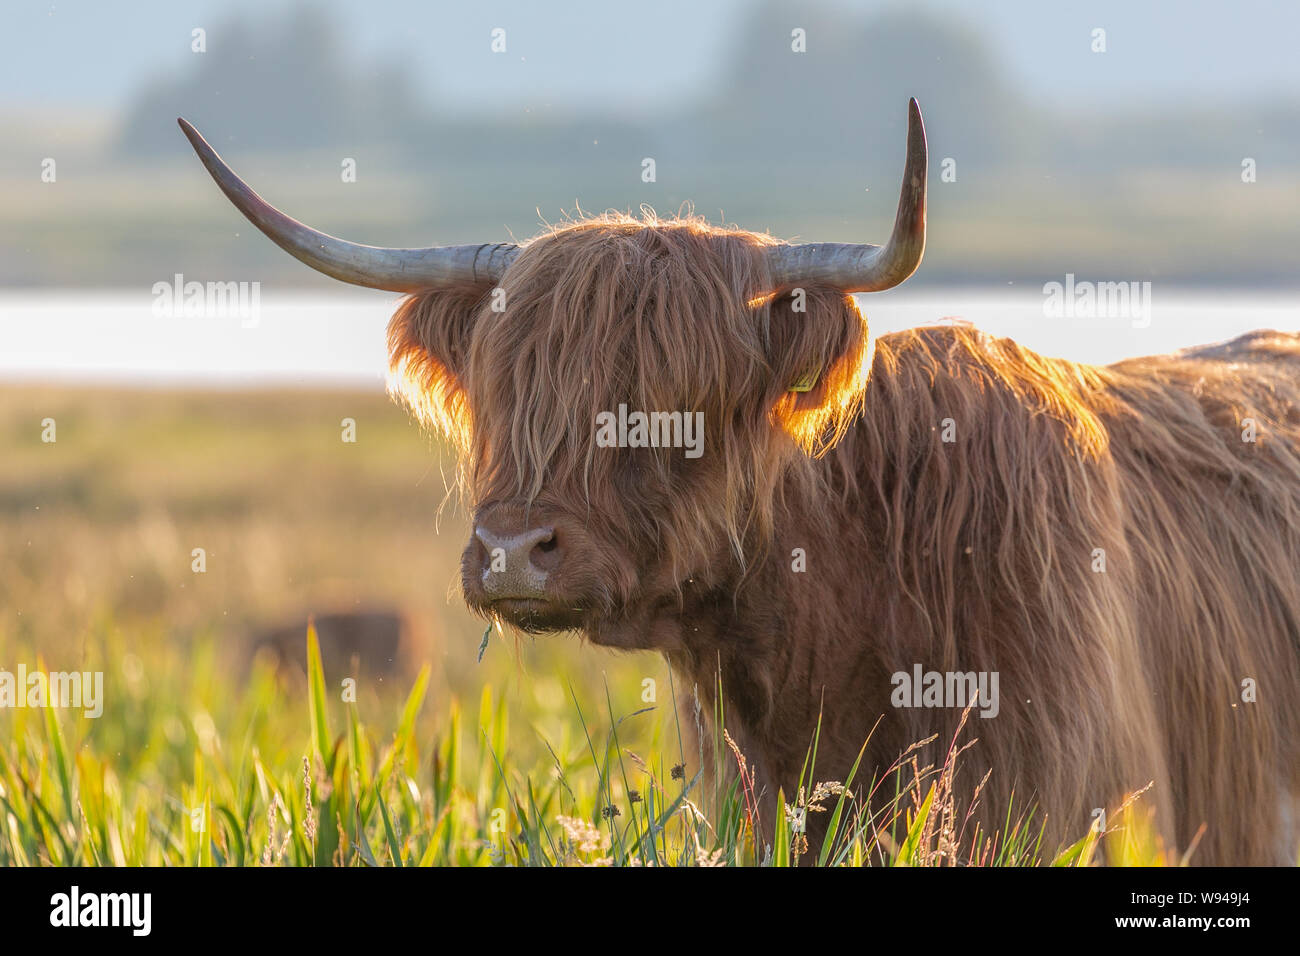 Highland rind kuh flauschige Fell Haare Gesicht stier Tiere Tier